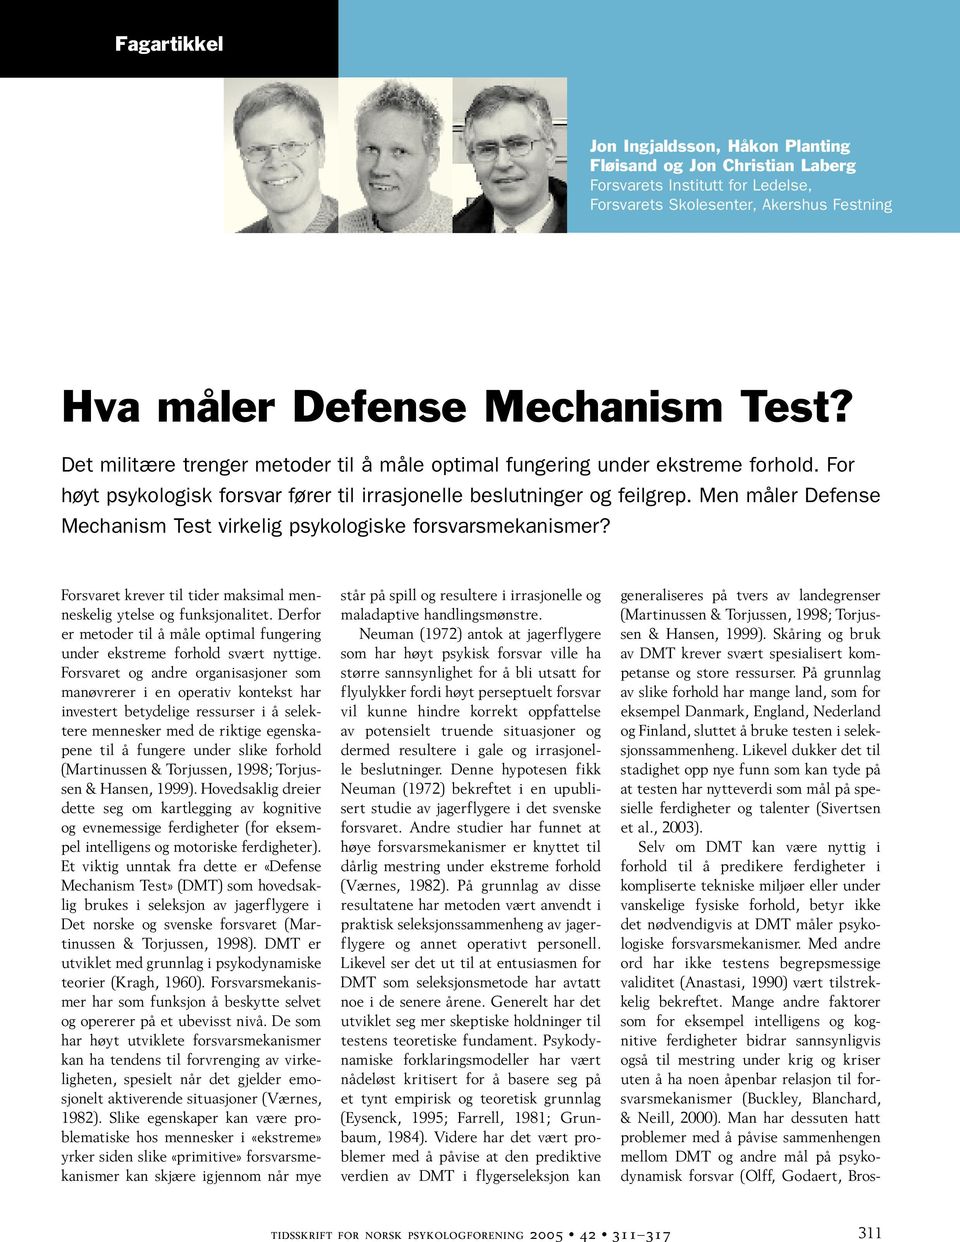 Men måler Defense Mechanism Test virkelig psykologiske forsvarsmekanismer? Forsvaret krever til tider maksimal menneskelig ytelse og funksjonalitet.